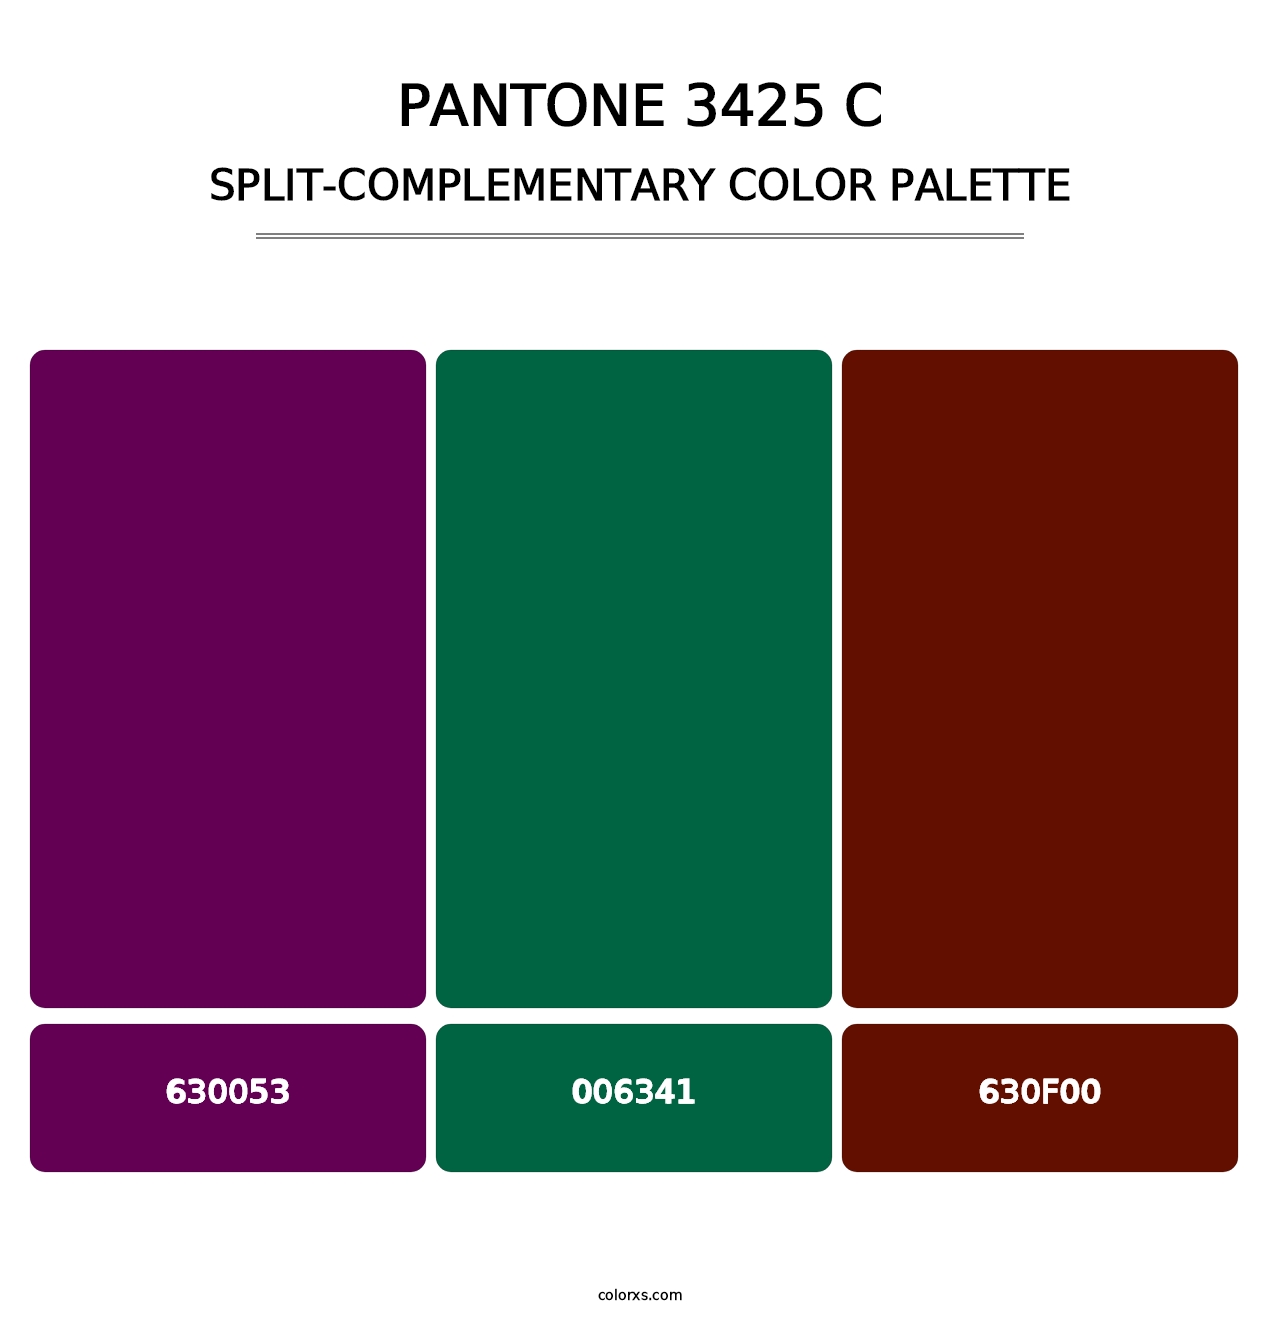 PANTONE 3425 C - Split-Complementary Color Palette